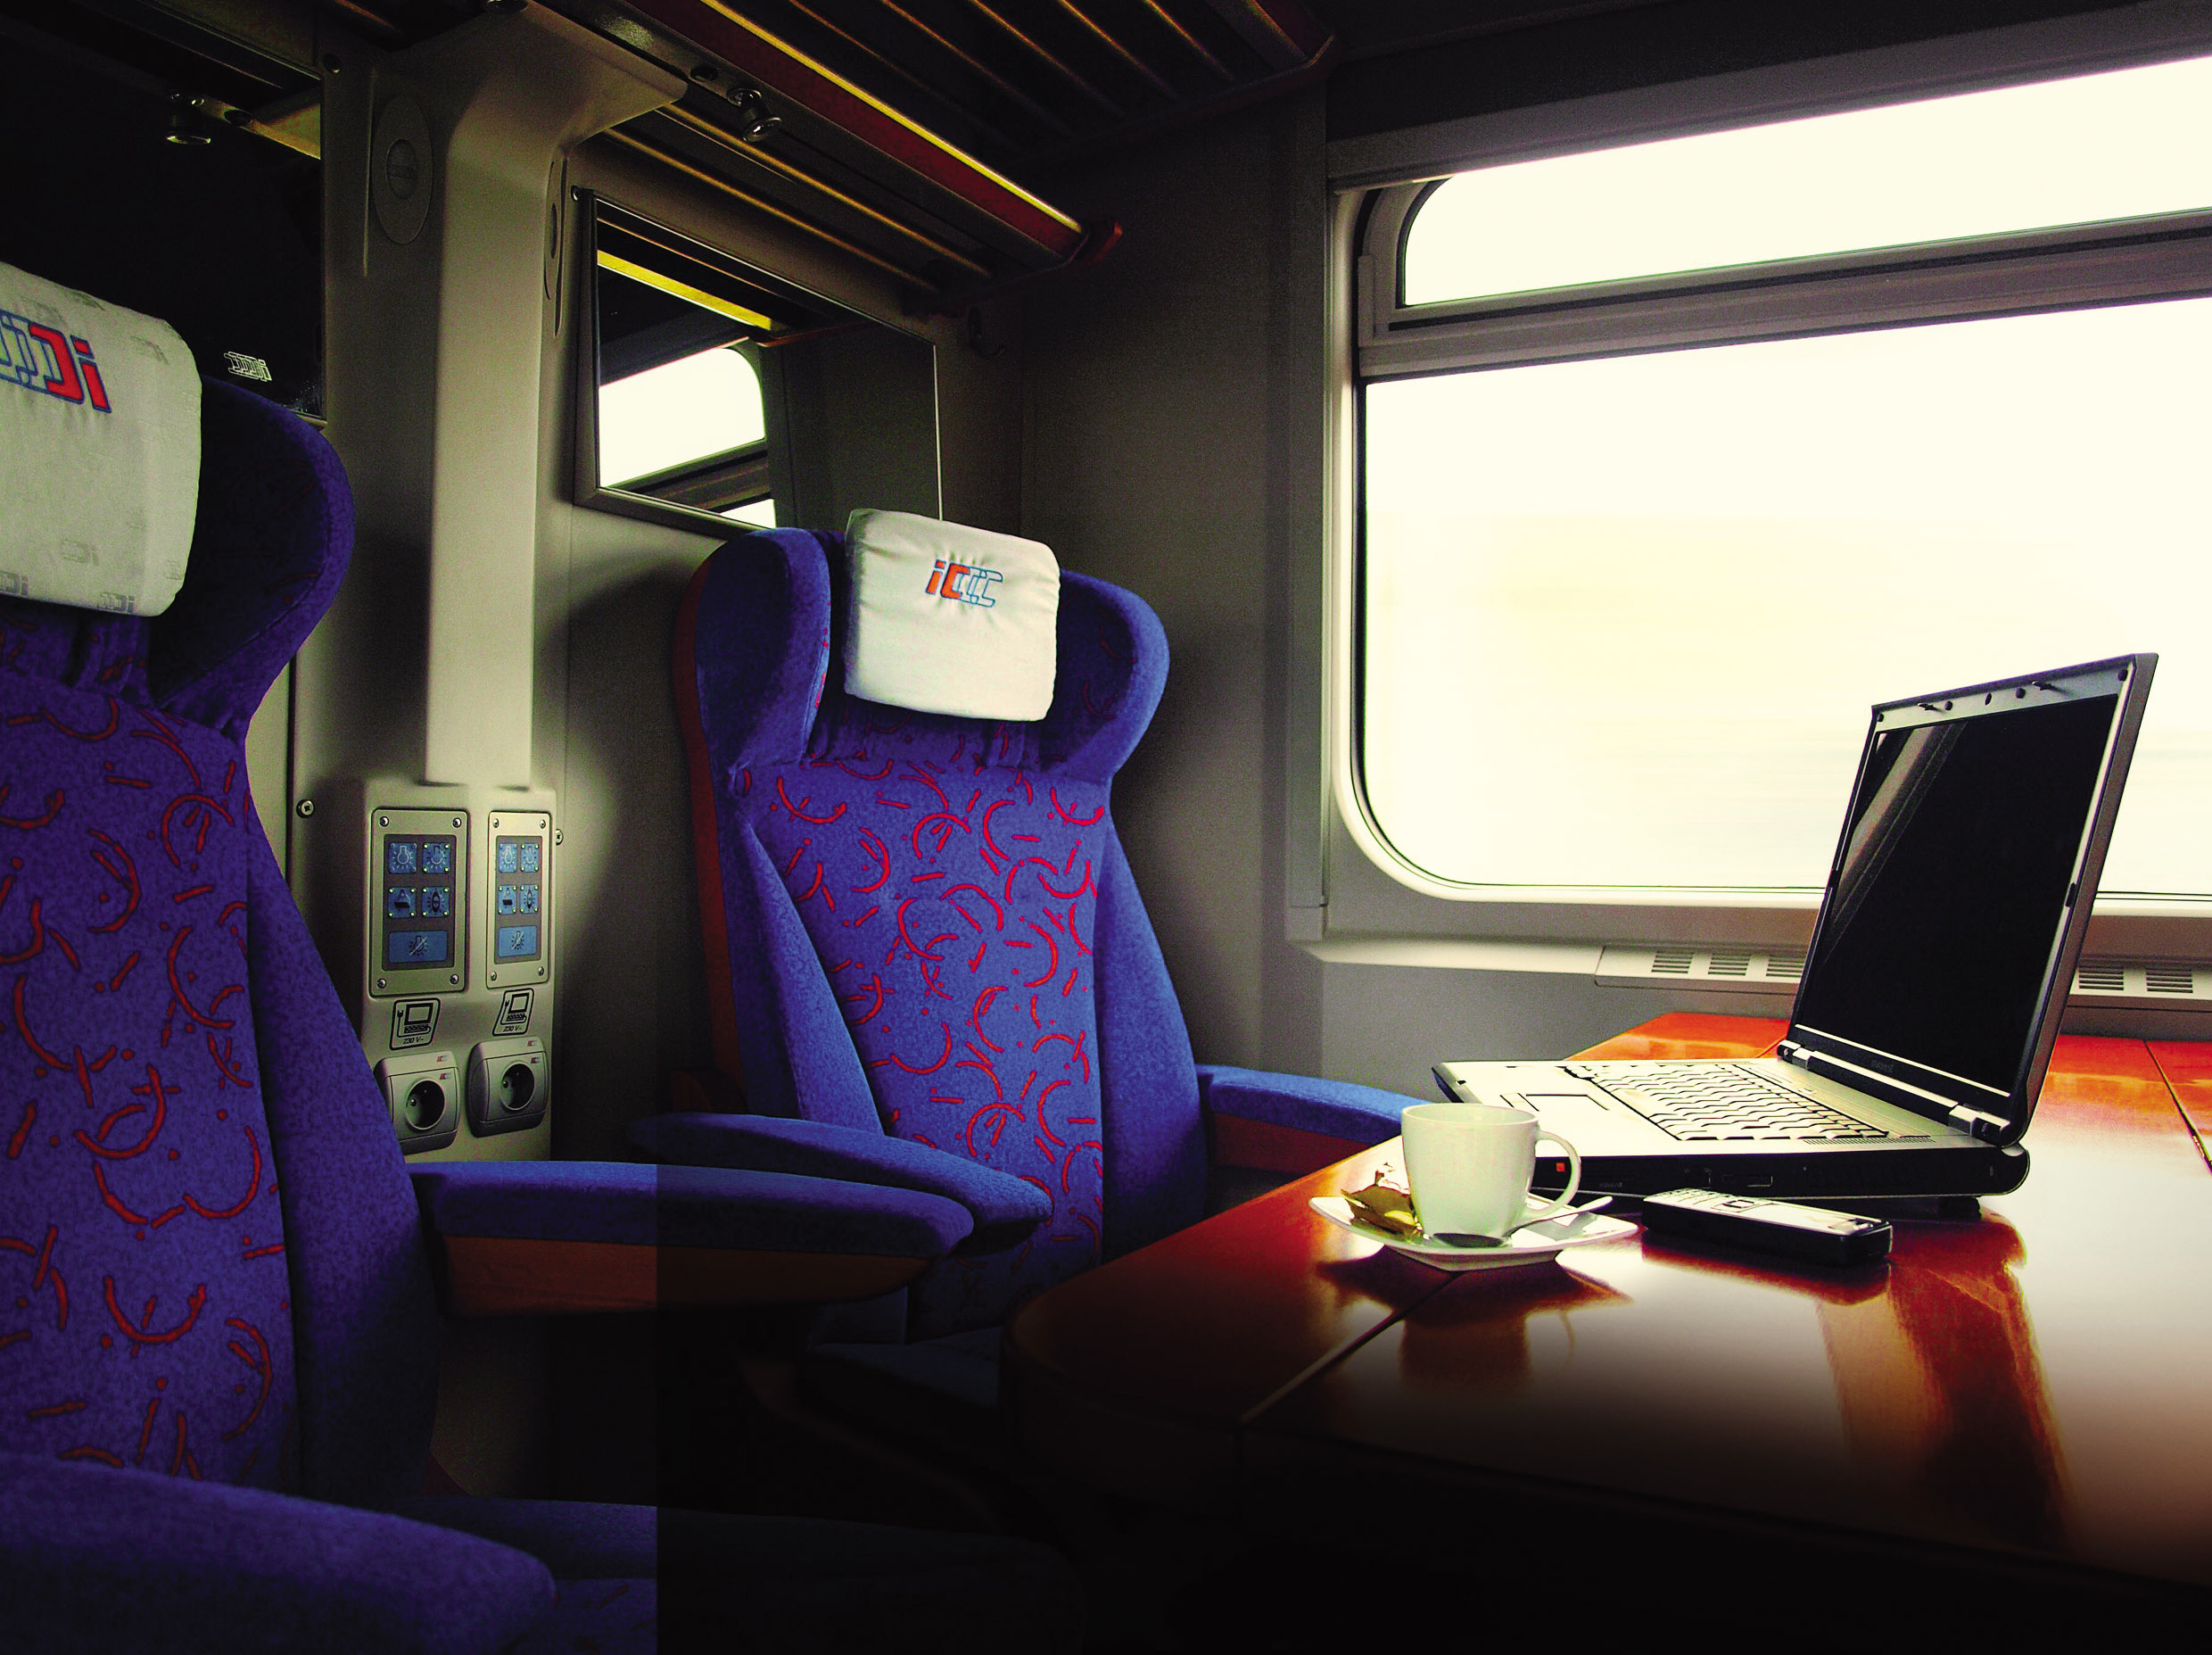 Nowoczesne i komfortowe wnętrza pociągów spółki PKP Intercity: przedział klasy biznes / Modern, comfortable interiors of PKP Intercity trains: business class compartment